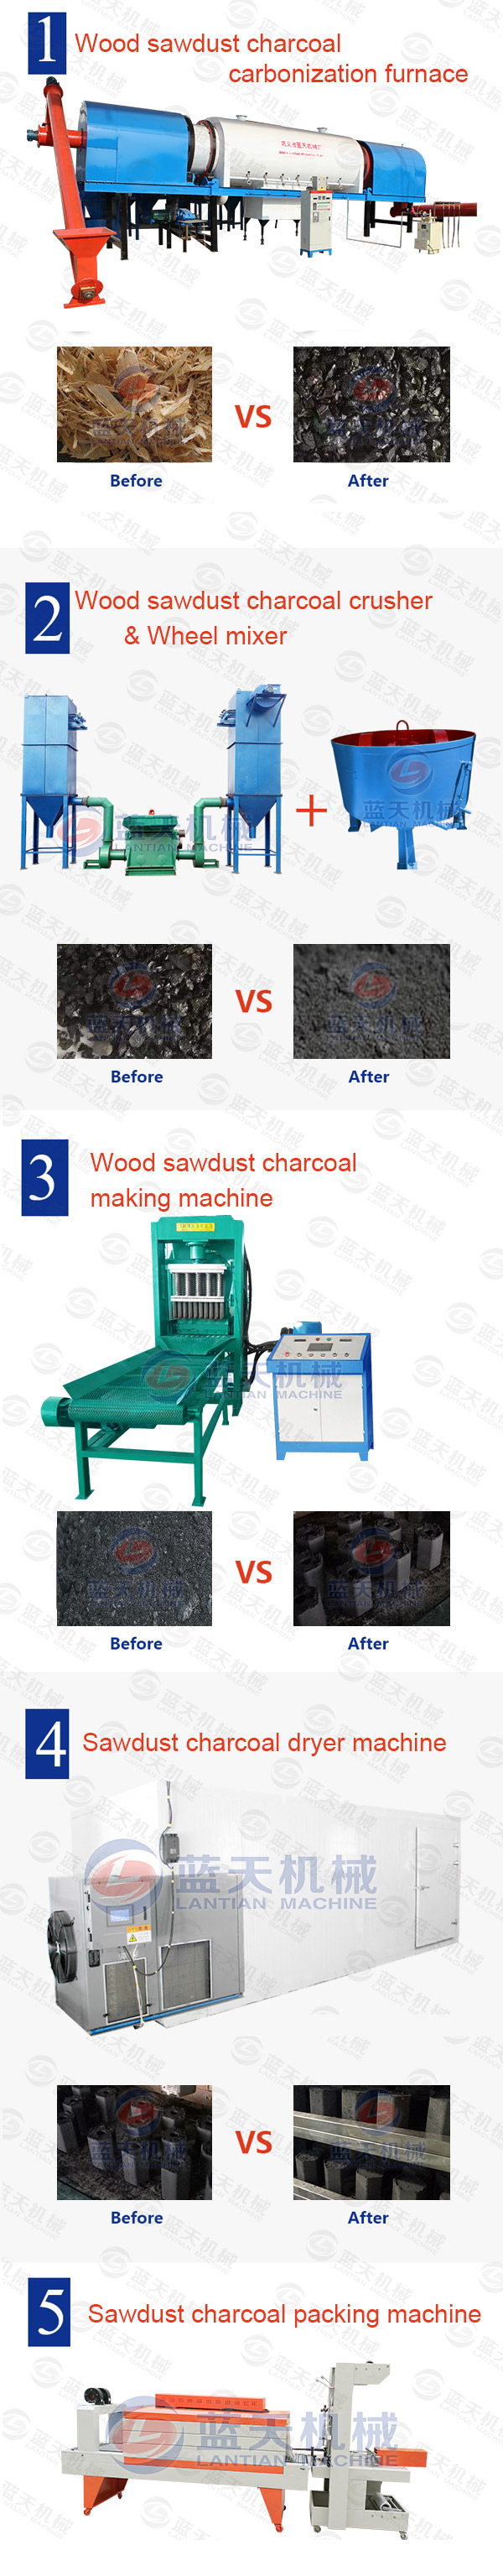 sawdust charcoal briquette machine